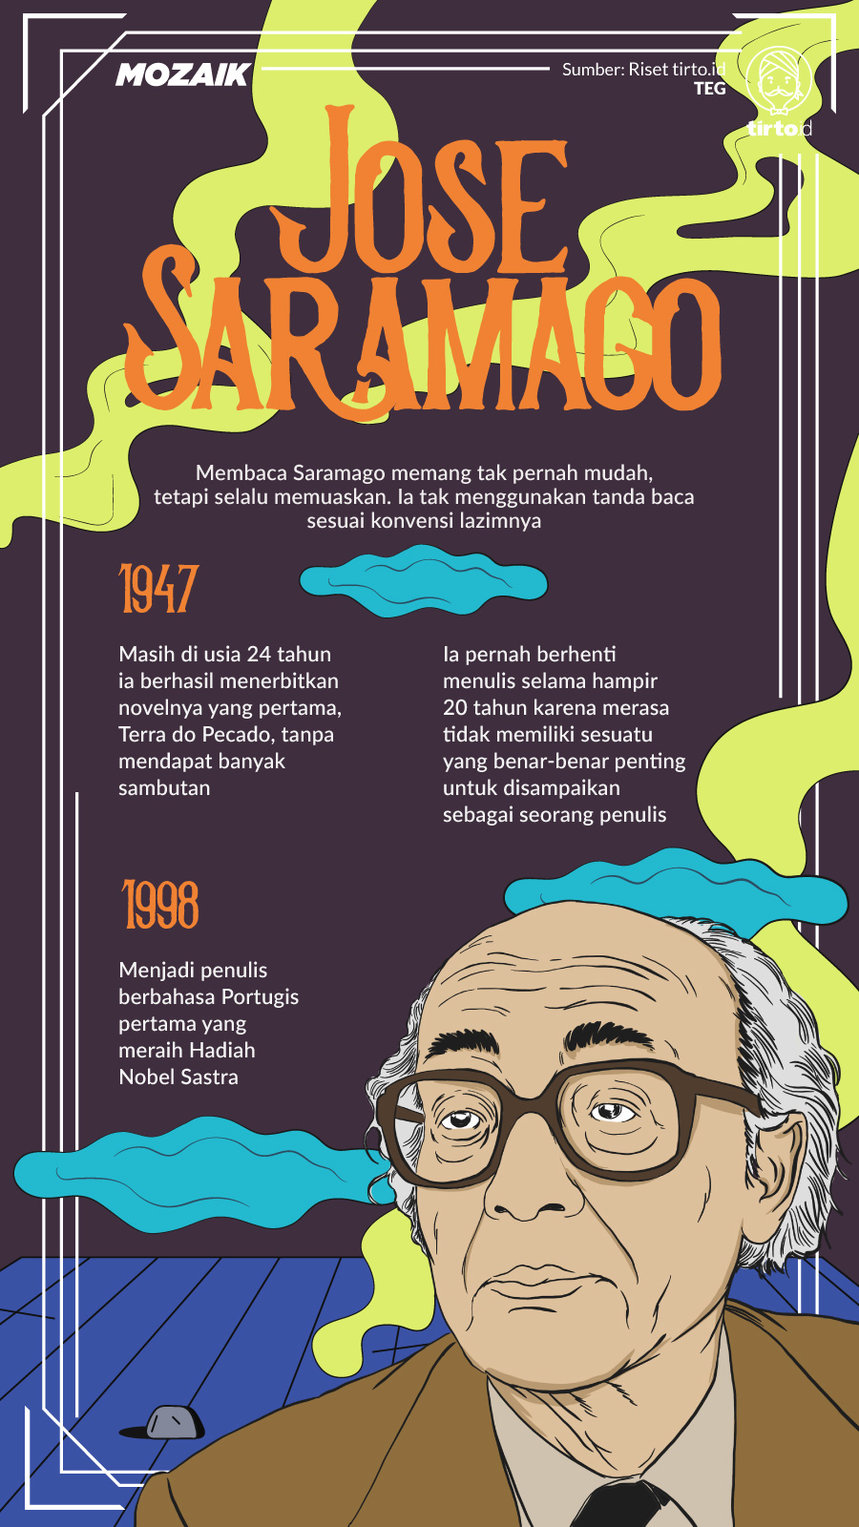 Infografik Mozaik Jose Saramago